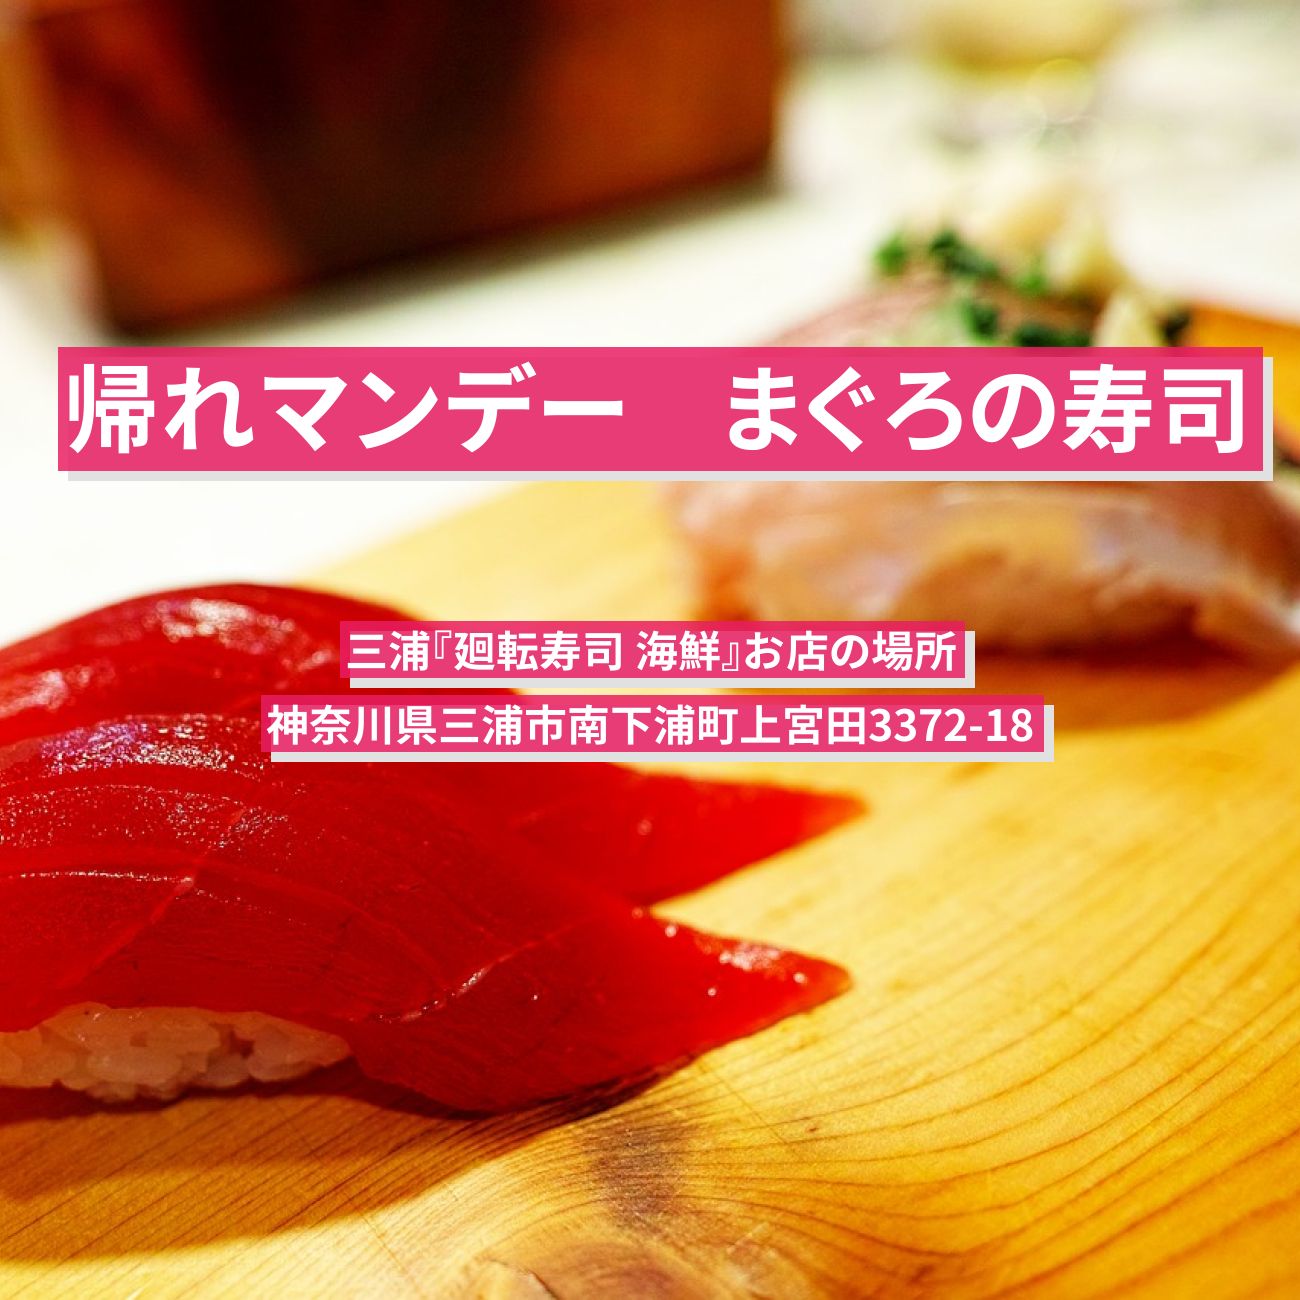 【帰れマンデー】まぐろの寿司セット『廻転寿司 海鮮』三浦のお店の場所